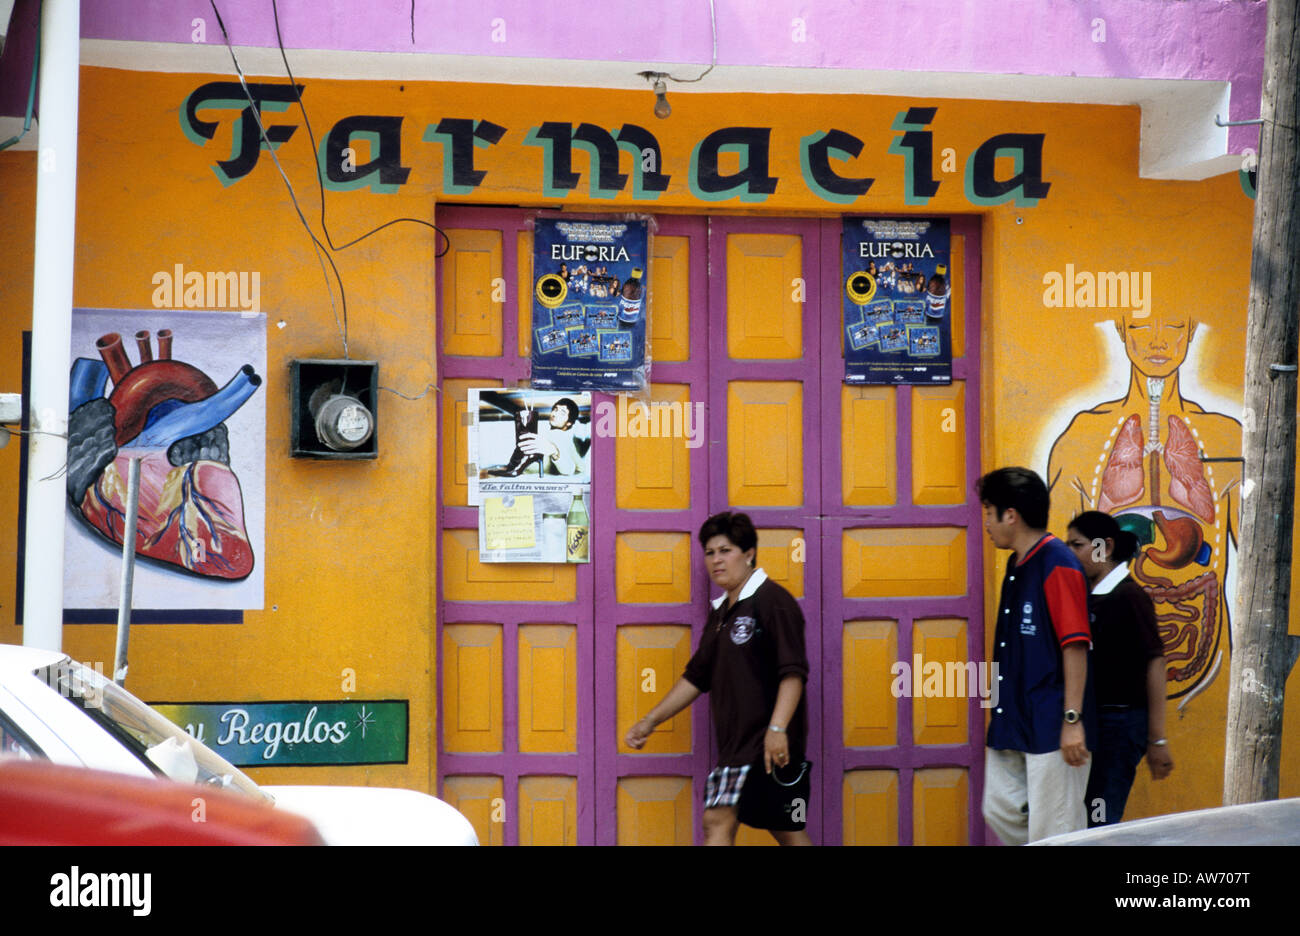 Pharmacy shop front, Merida, Mexico Stock Photo